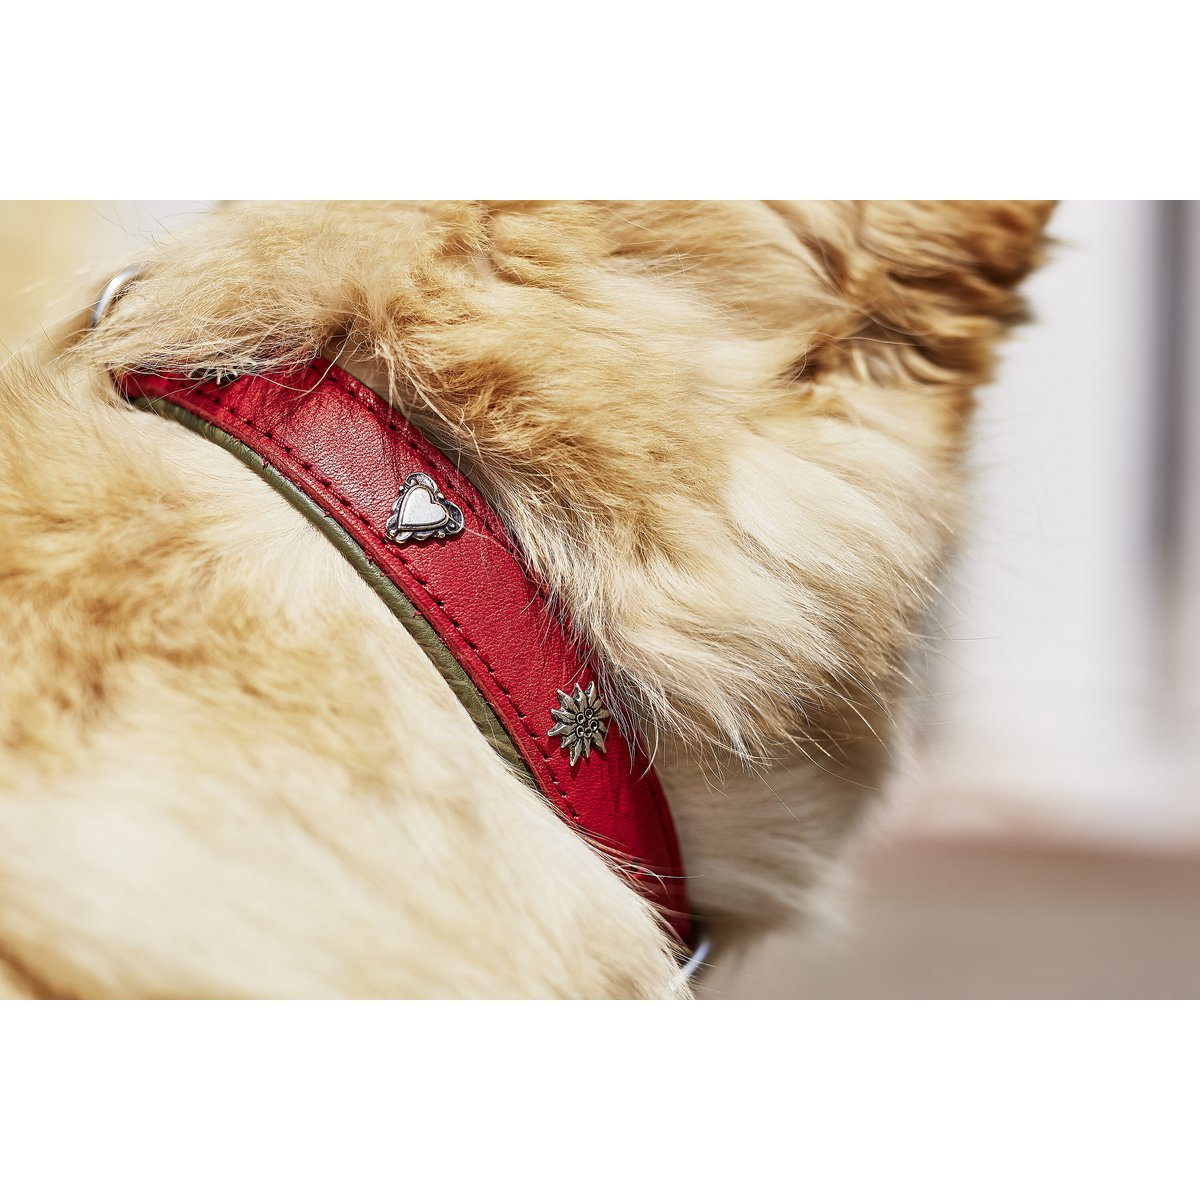 EDELWEISS halsbandDe EDELWEISS-collectie is gemaakt met aandacht voor detail en biedt de beste kwaliteit zadelmakerij "Made in Germany". De halsbanden zijn gemaakt van duurzaam volnerDog collarLABONIwafwafEDELWEISS halsband